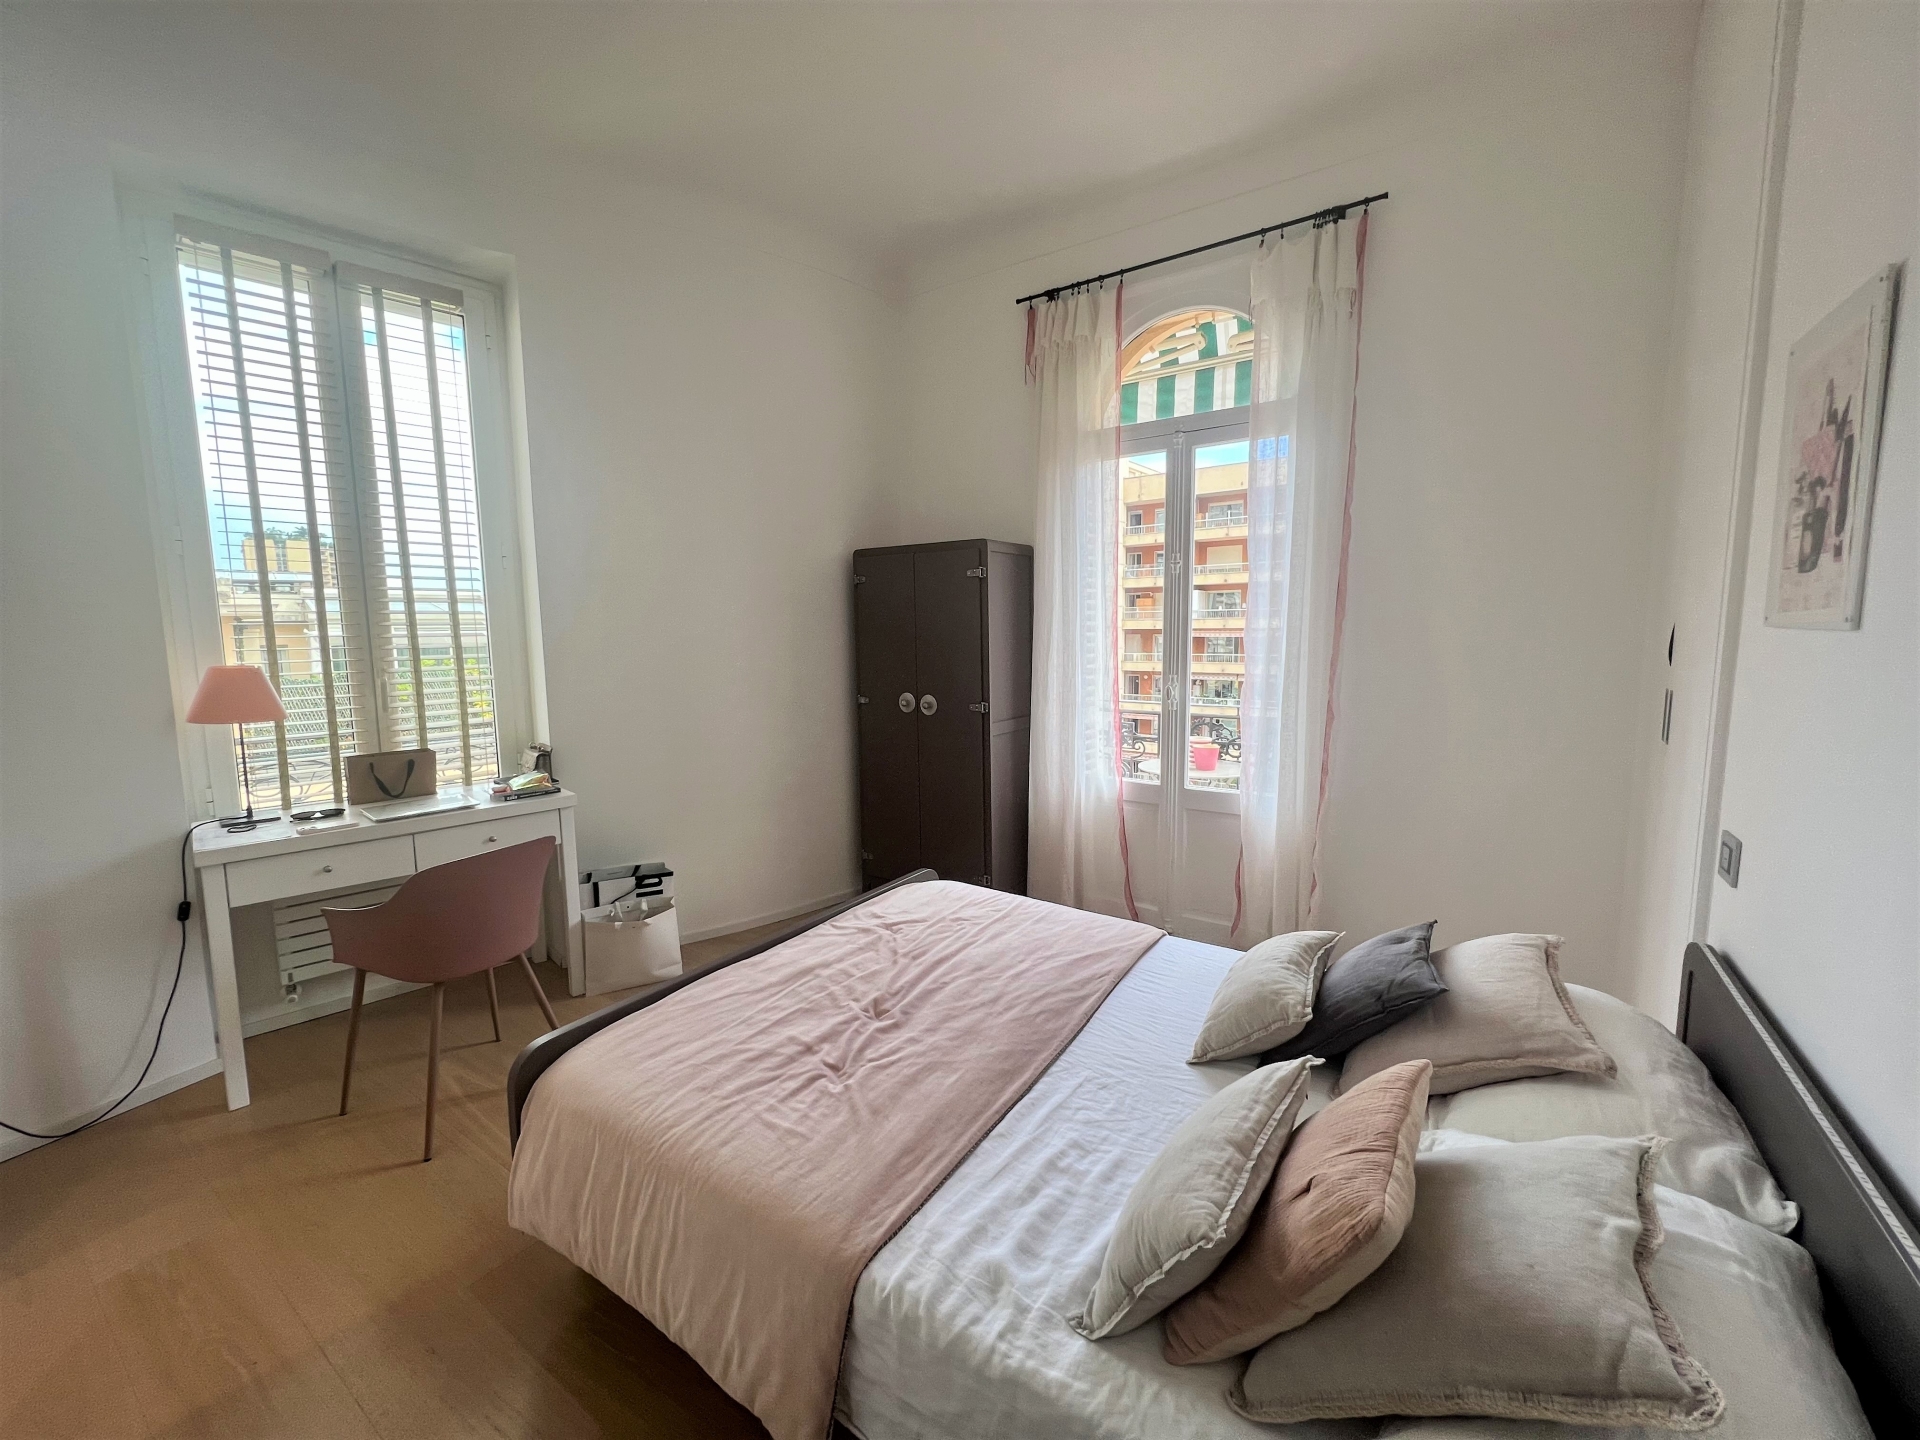 Dotta Appartement de 5 pieces a vendre - RADIEUSE - La Rousse - Monaco - imgimage00008